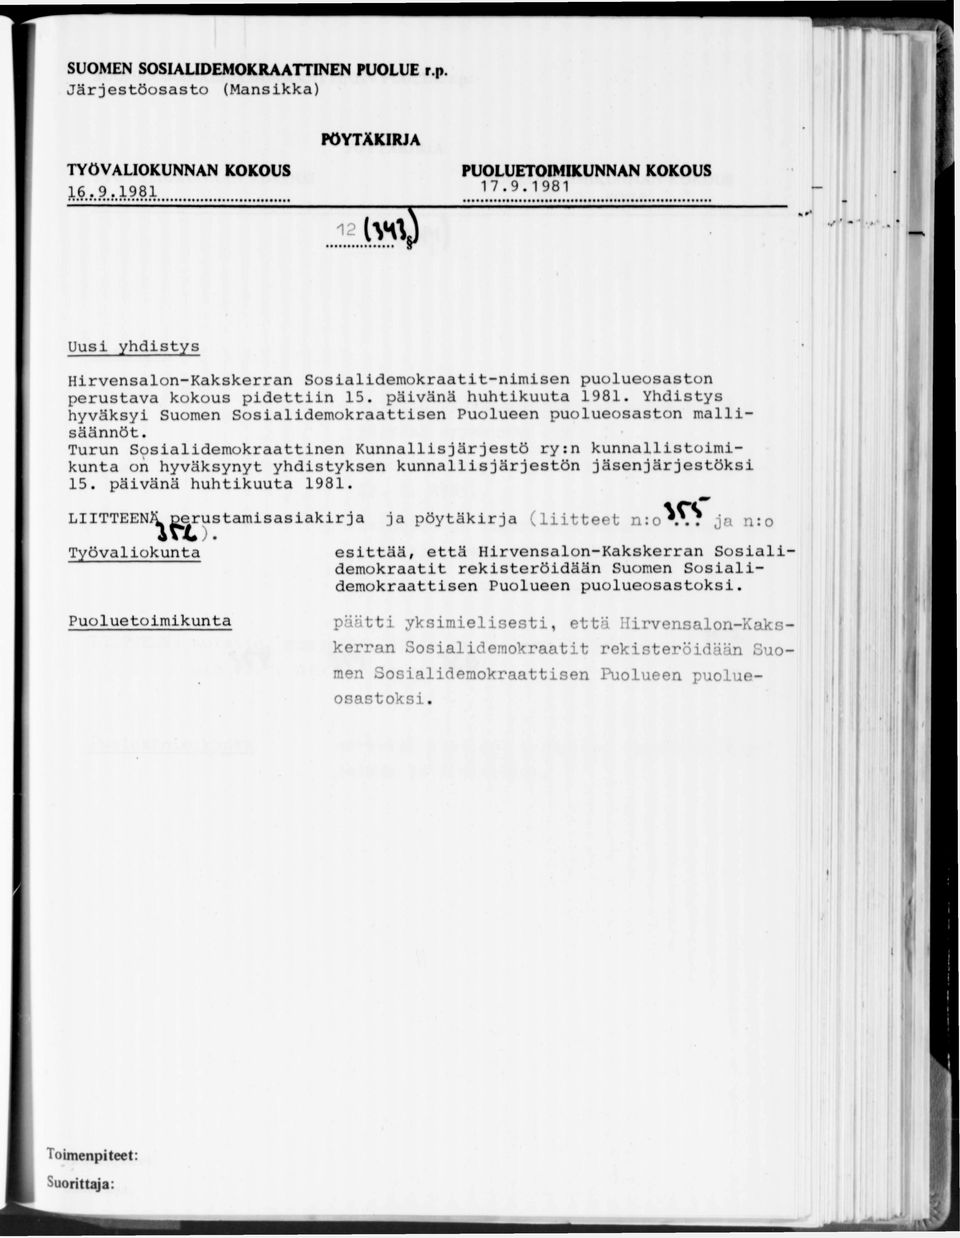 Turun Scpsialidemokraattinen Kunnallisjärjestö ry:n kunnallistoimikunta on hyväksynyt yhdistyksen kunnallisjärjestön jäsenjärjestöksi 15. päivänä huhtikuuta 1981.